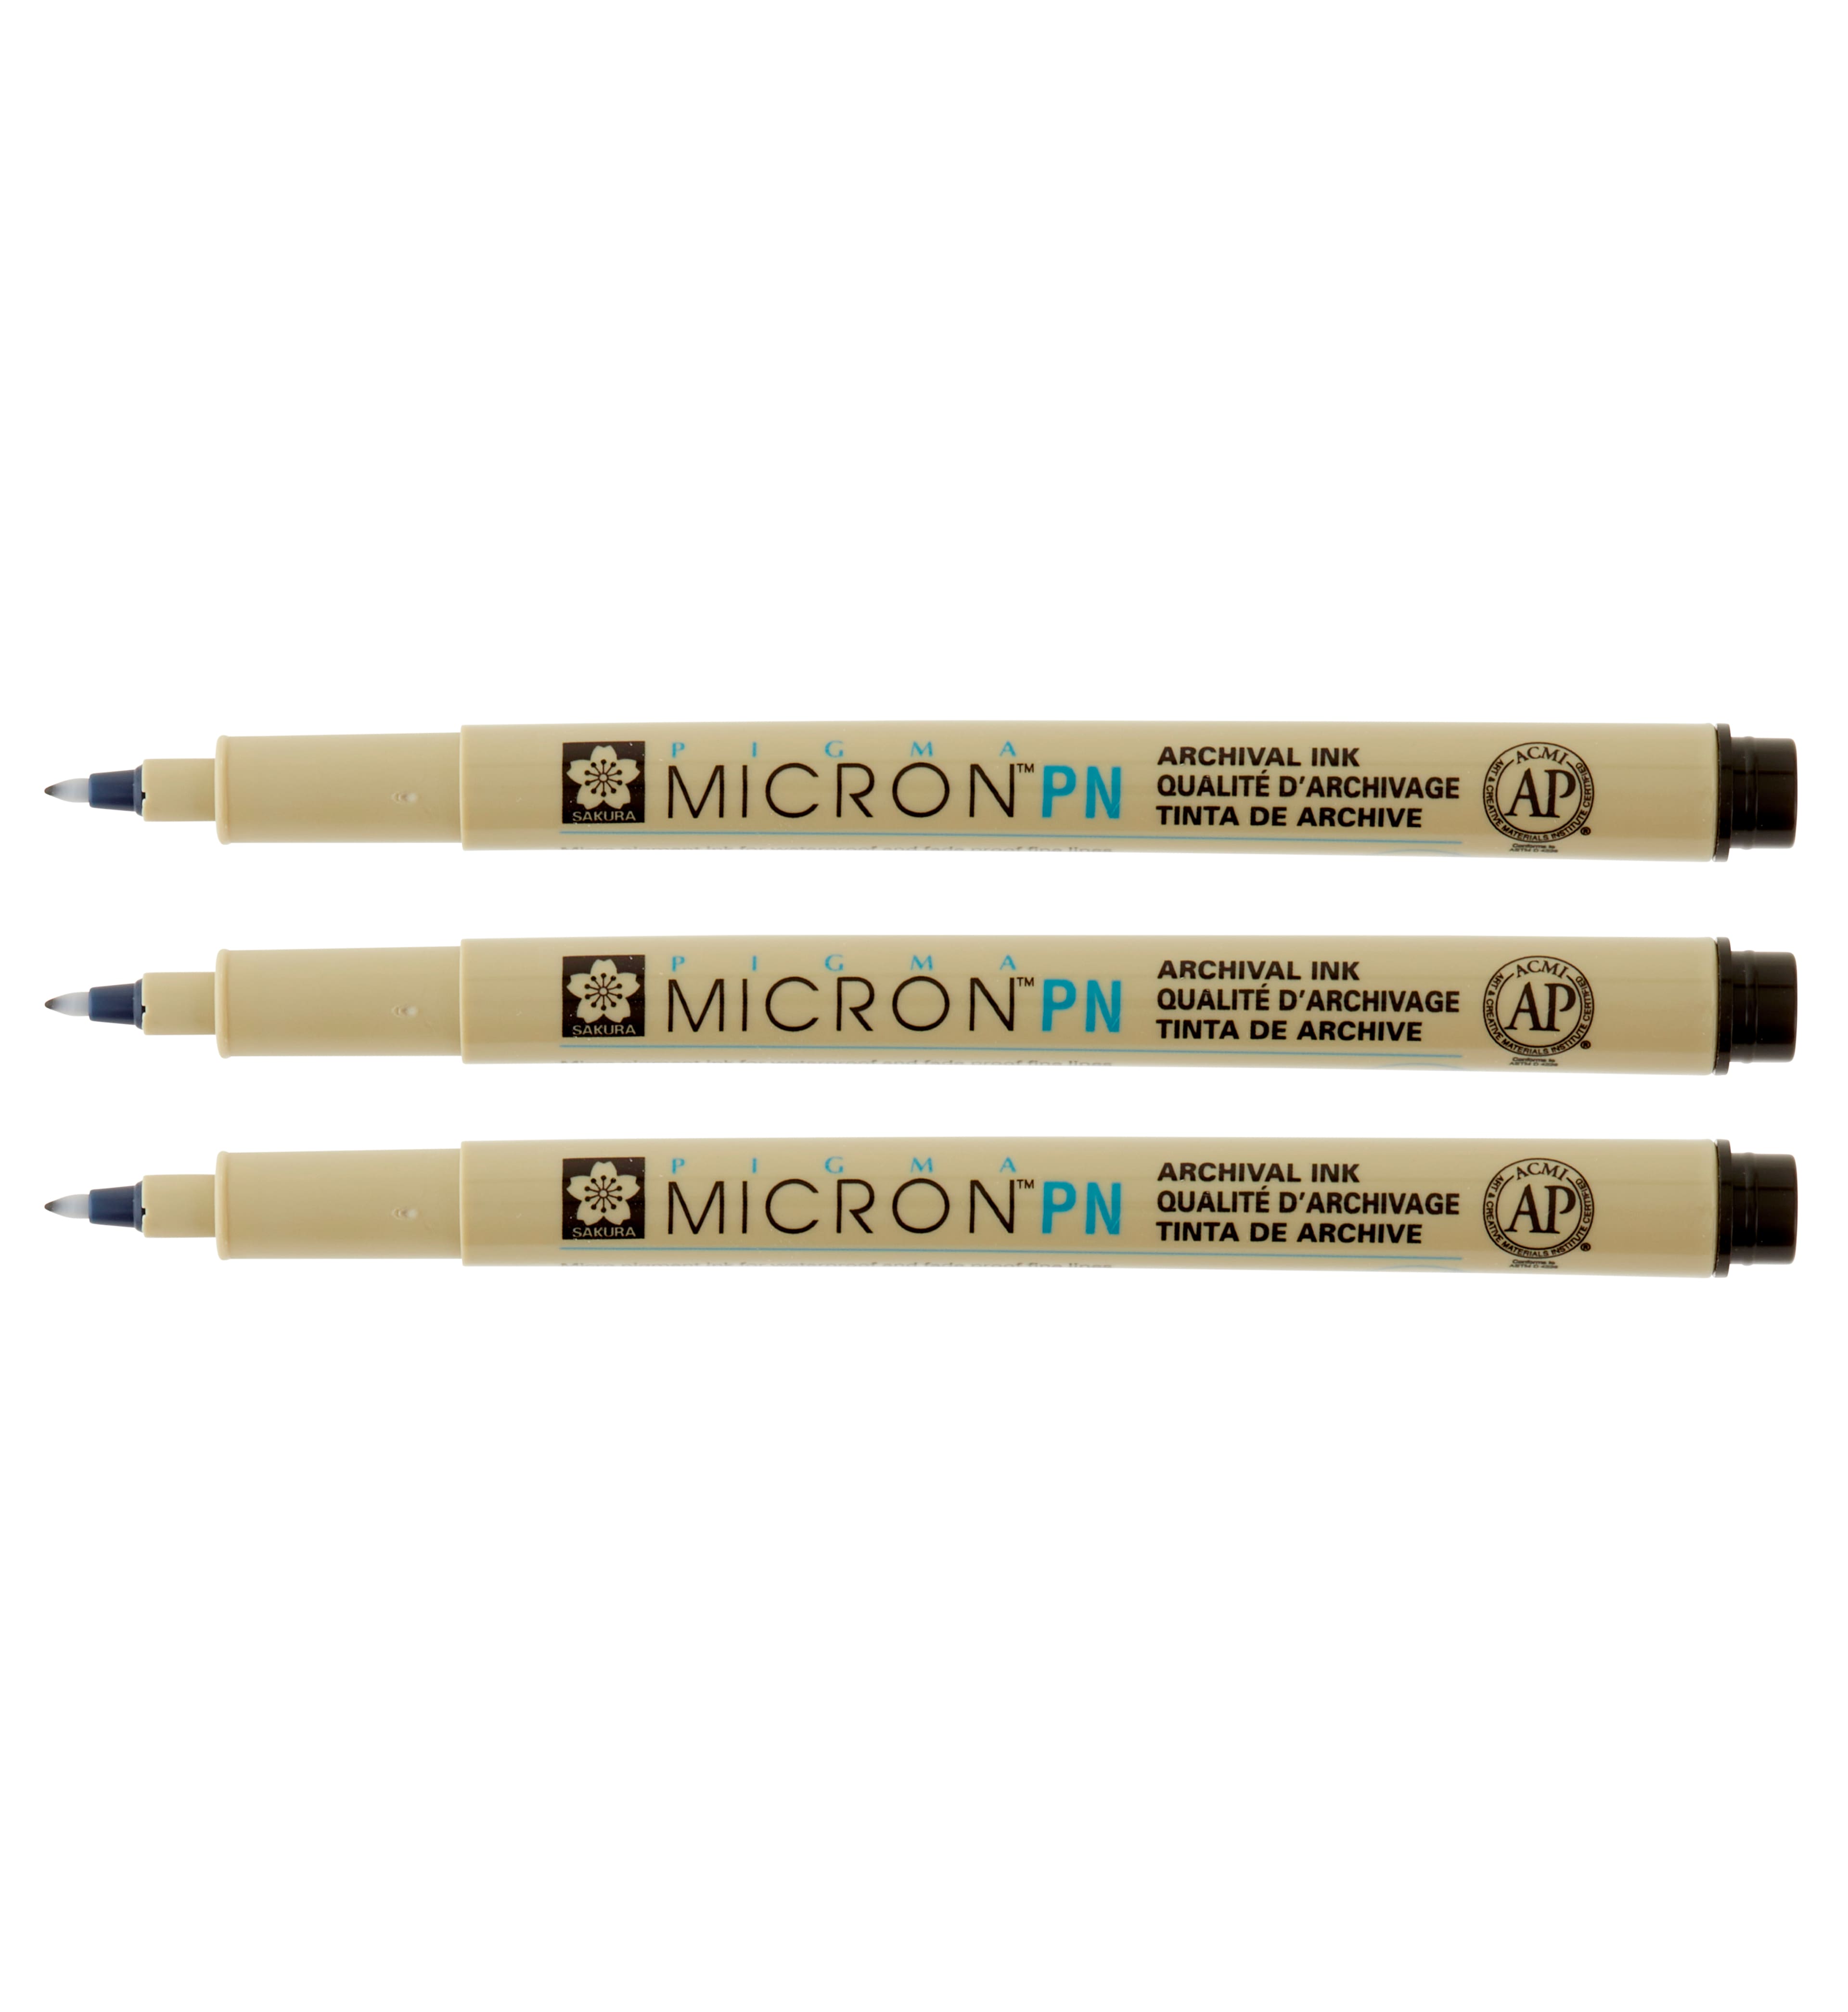 SAKURA Pigma Micron Pens 01 .25Mm 6/Pkg-Black, Blue, Green, Red, Purple &  Brown - Pigma Micron Pens 01 .25Mm 6/Pkg-Black, Blue, Green, Red, Purple &  Brown . shop for SAKURA products in